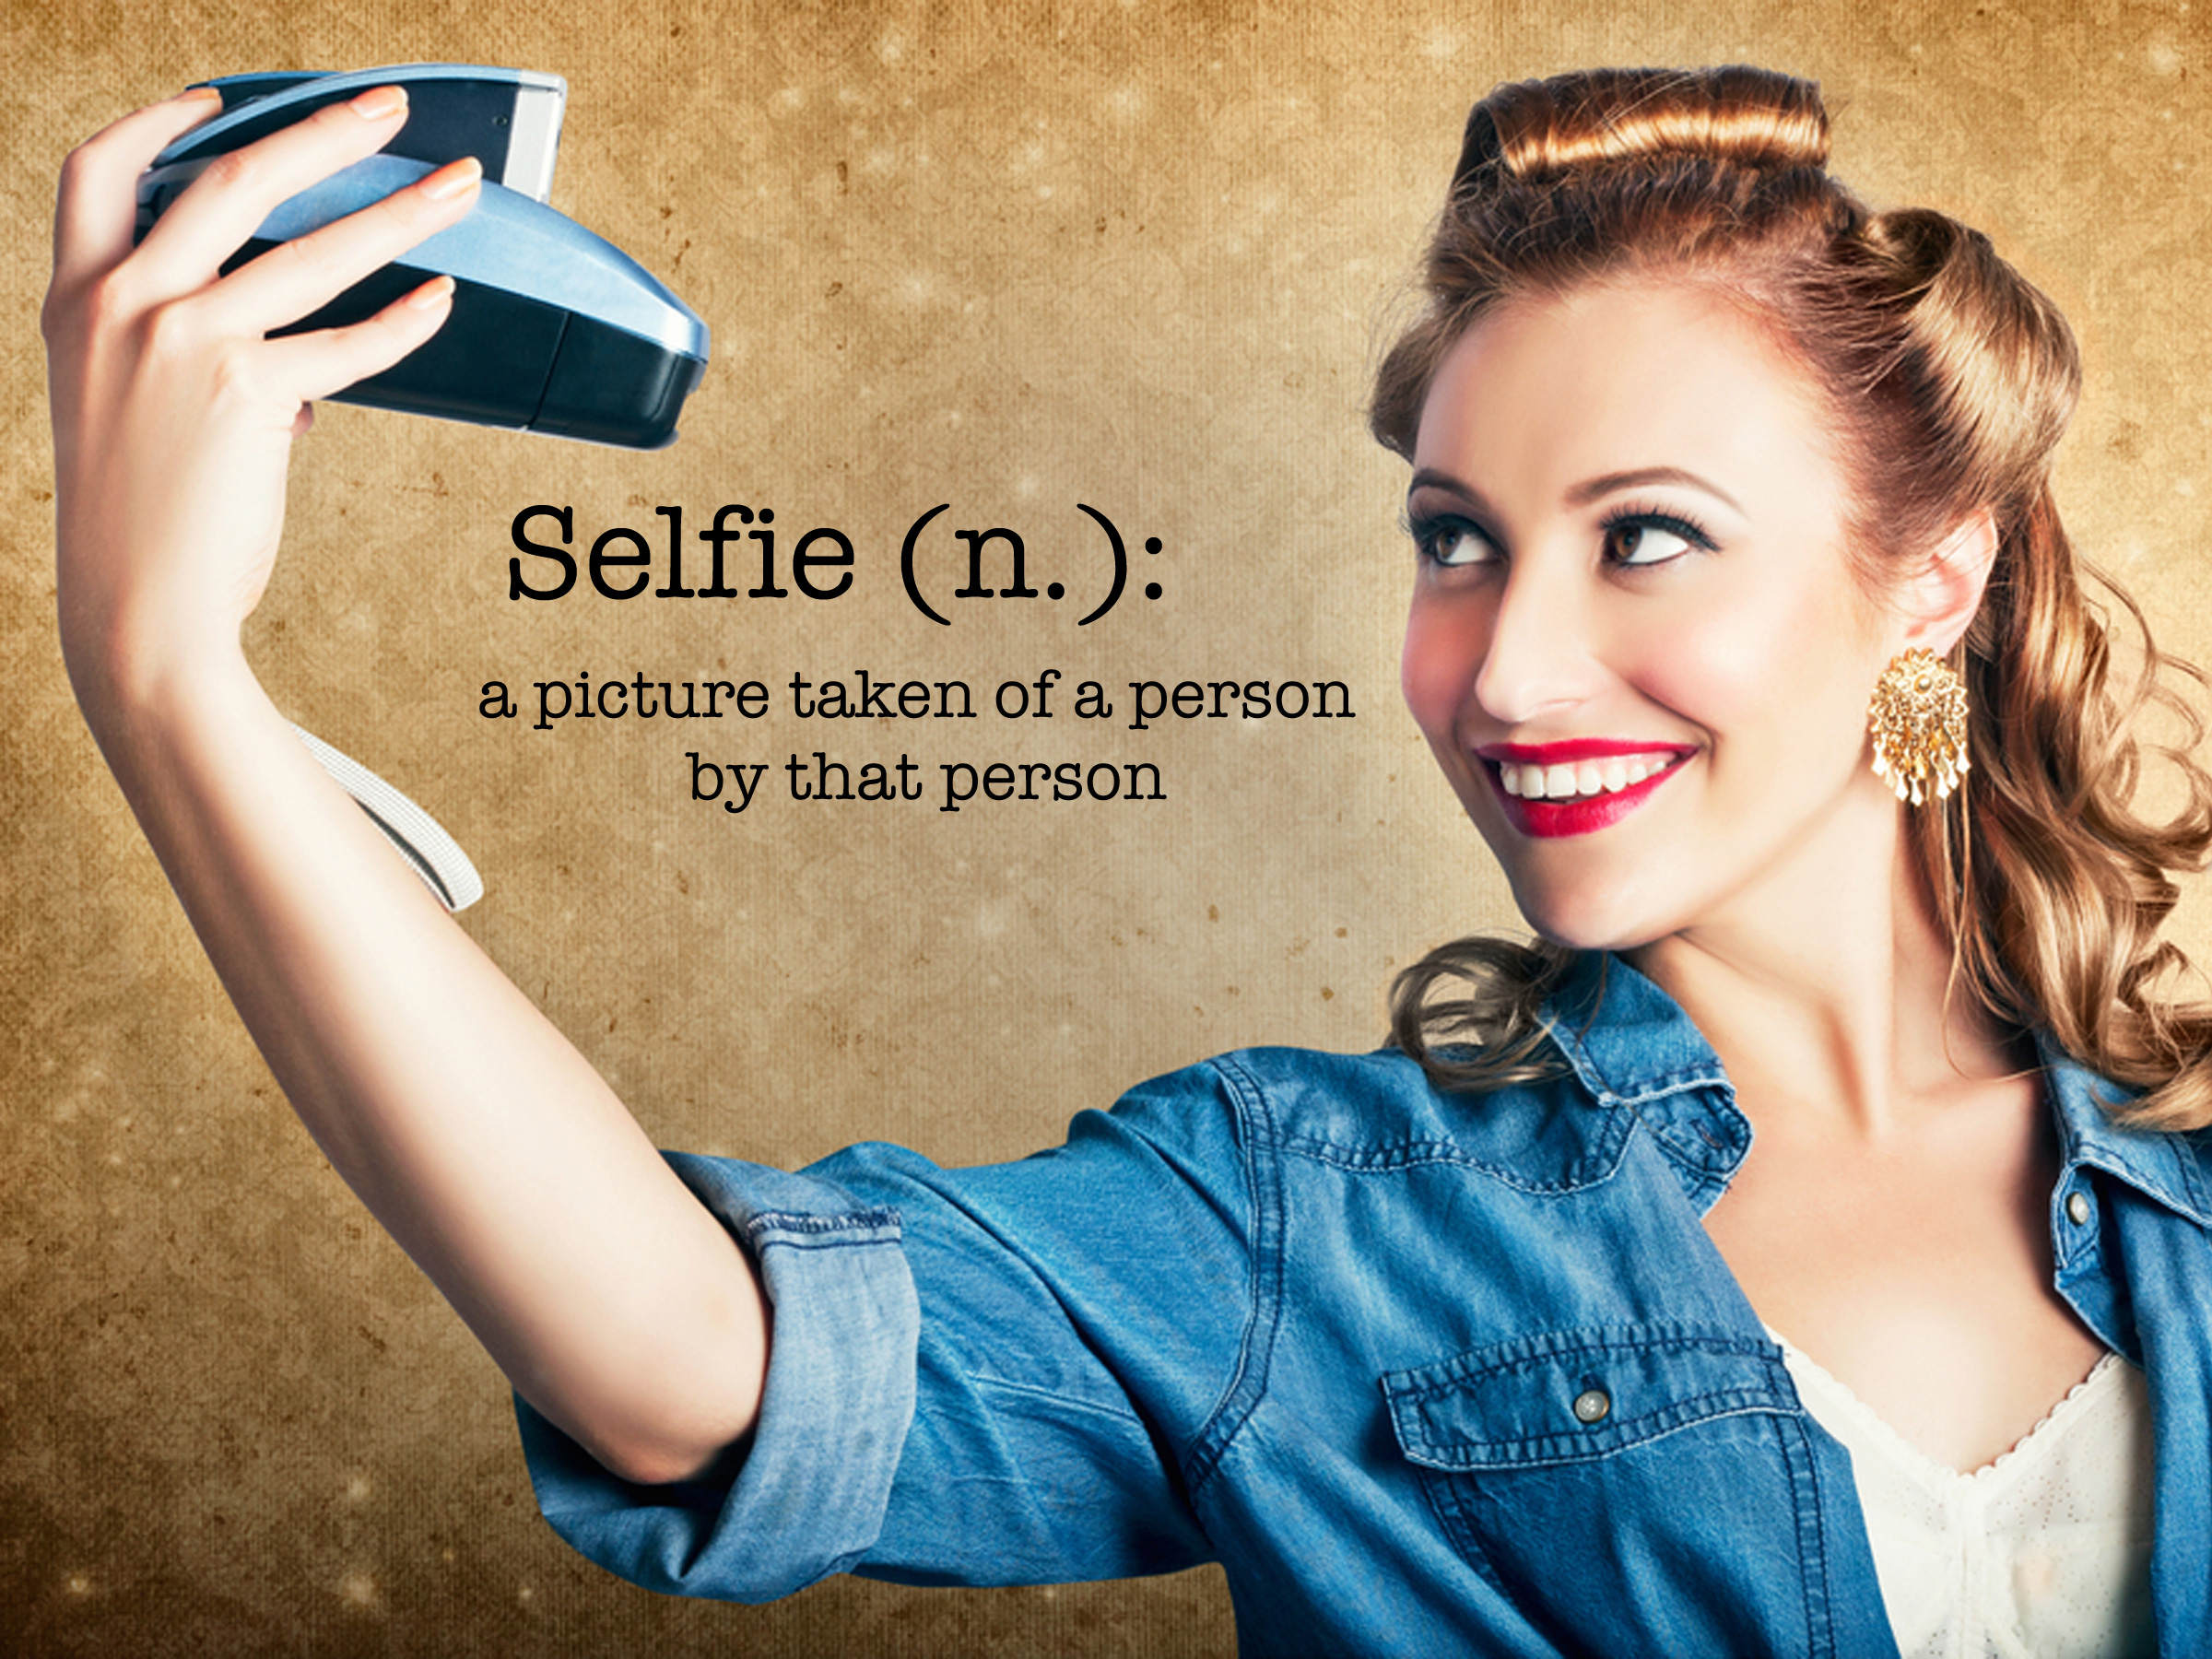 La nueva moda de las fotografías o selfie